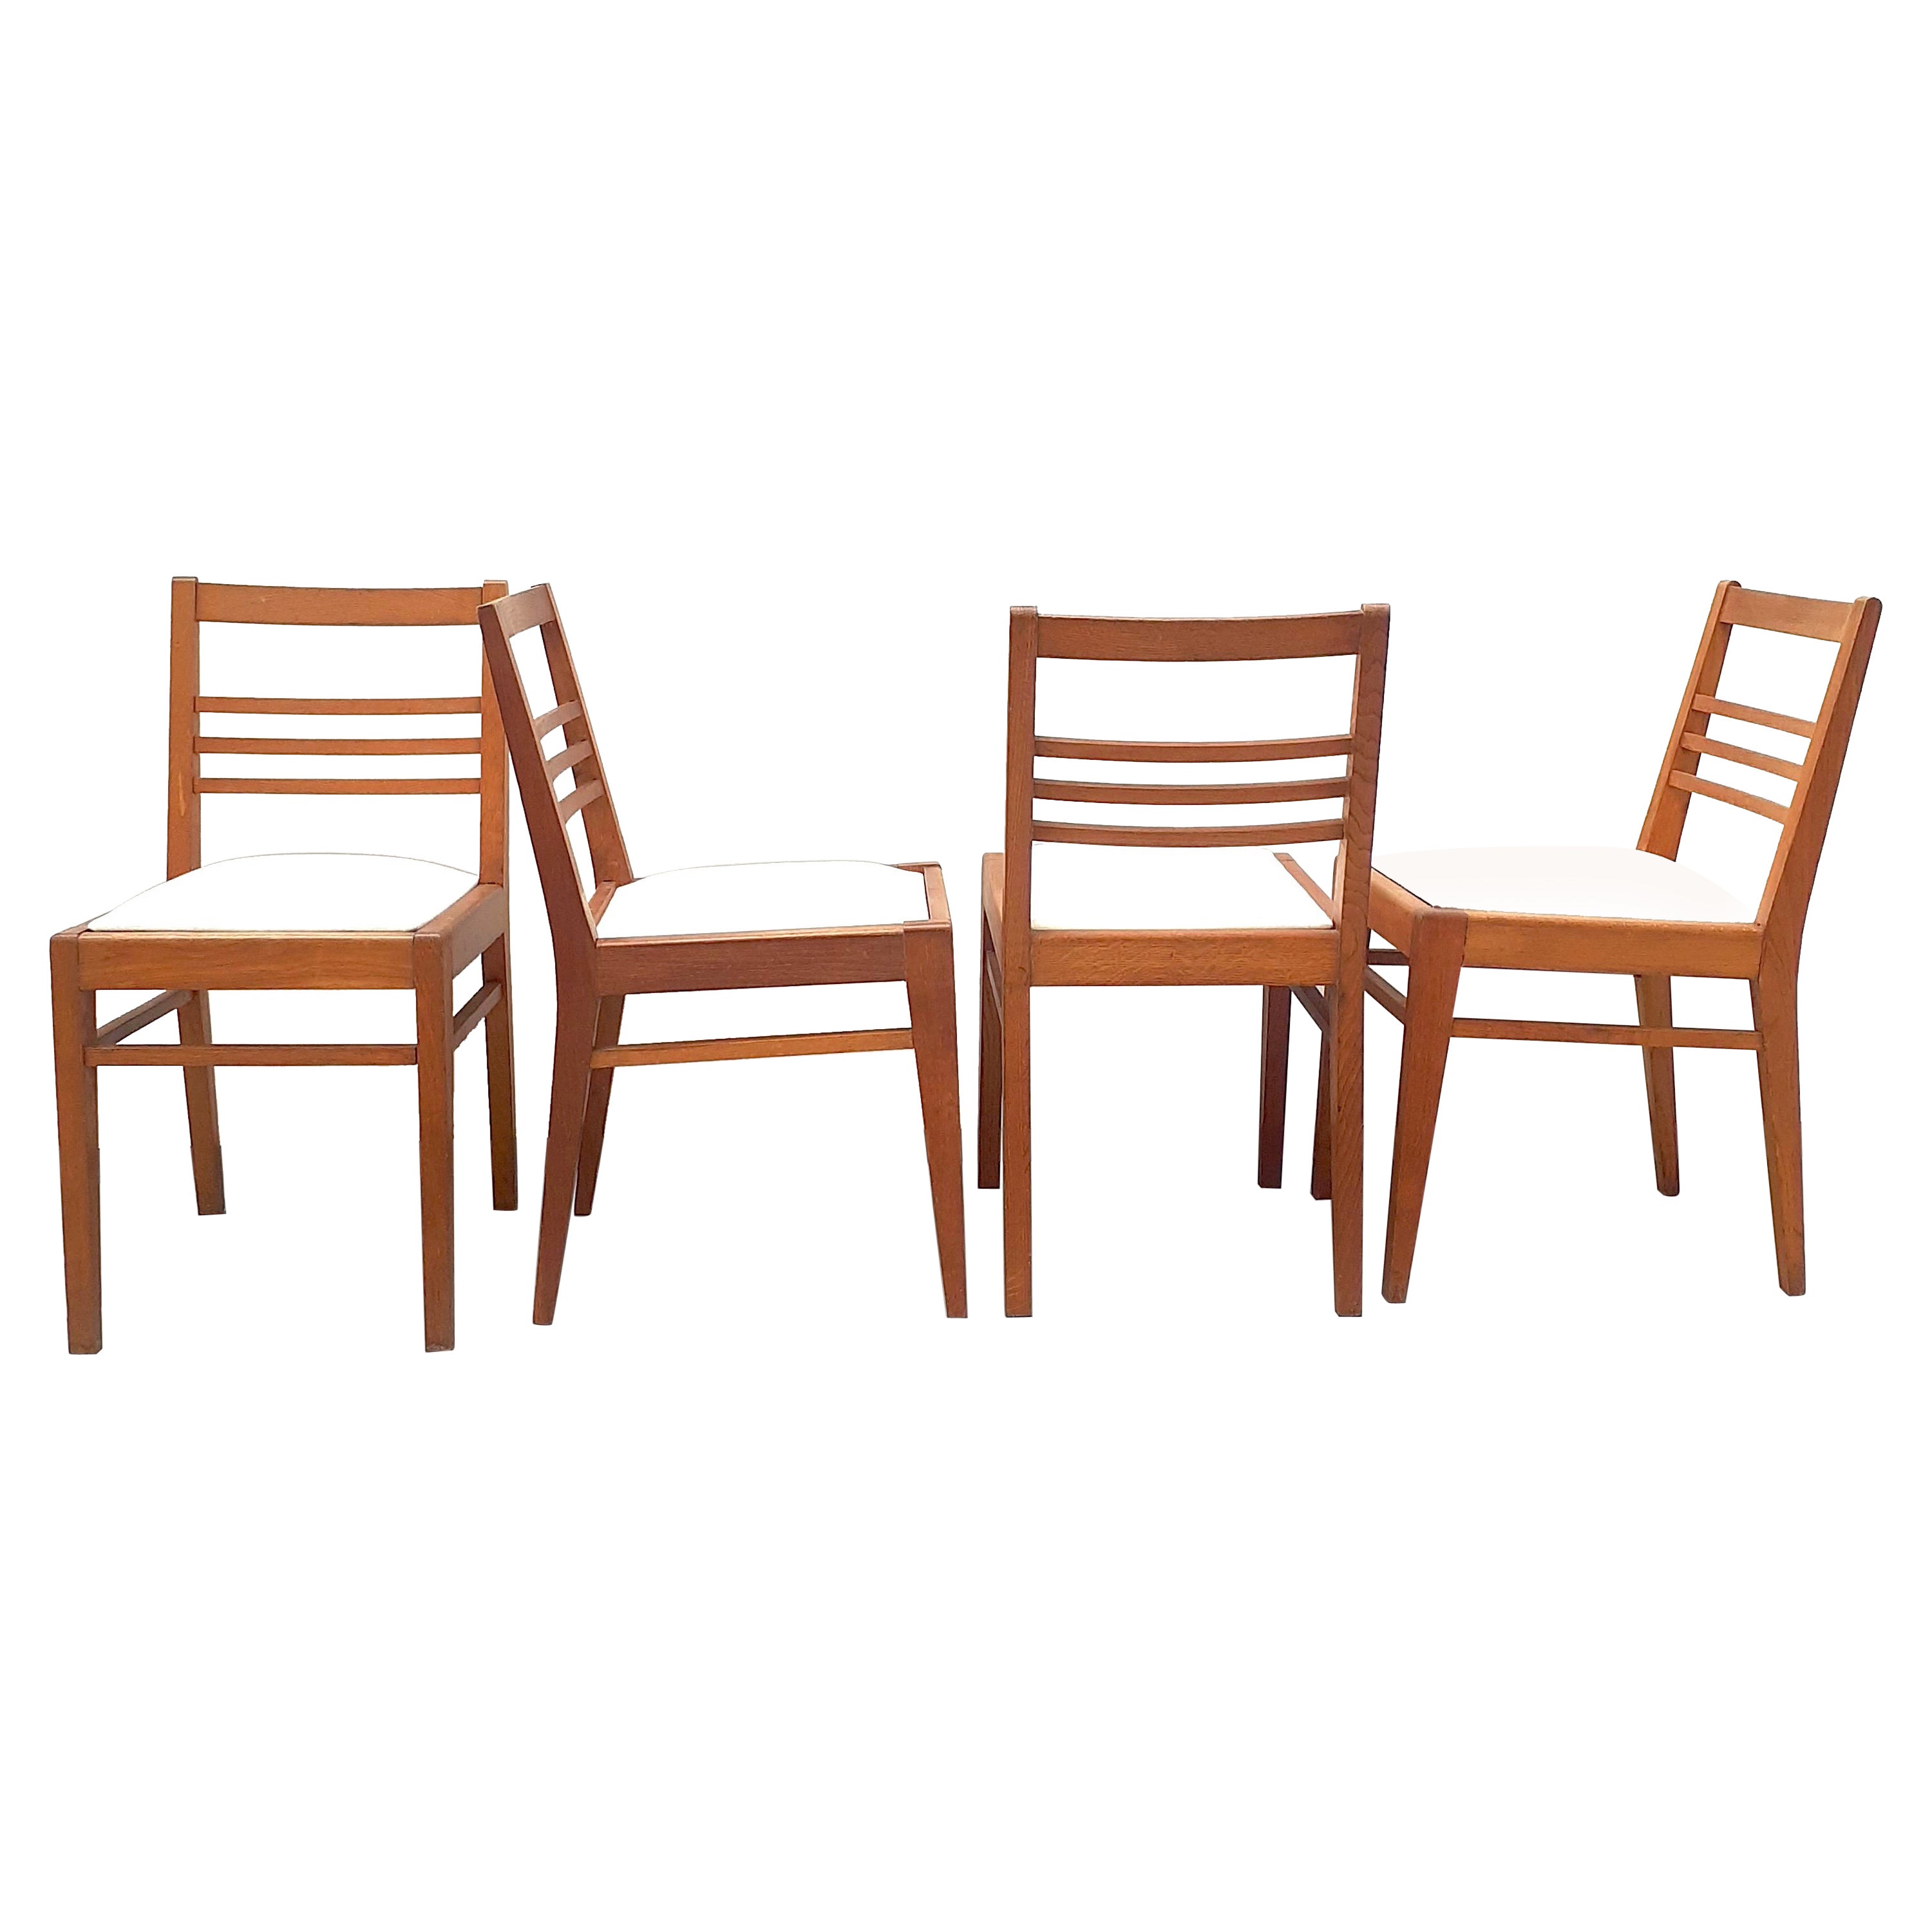 4 Stühle aus Eichenholz mit weißem Stoffsitz von René Gabriel, 1950er Jahre